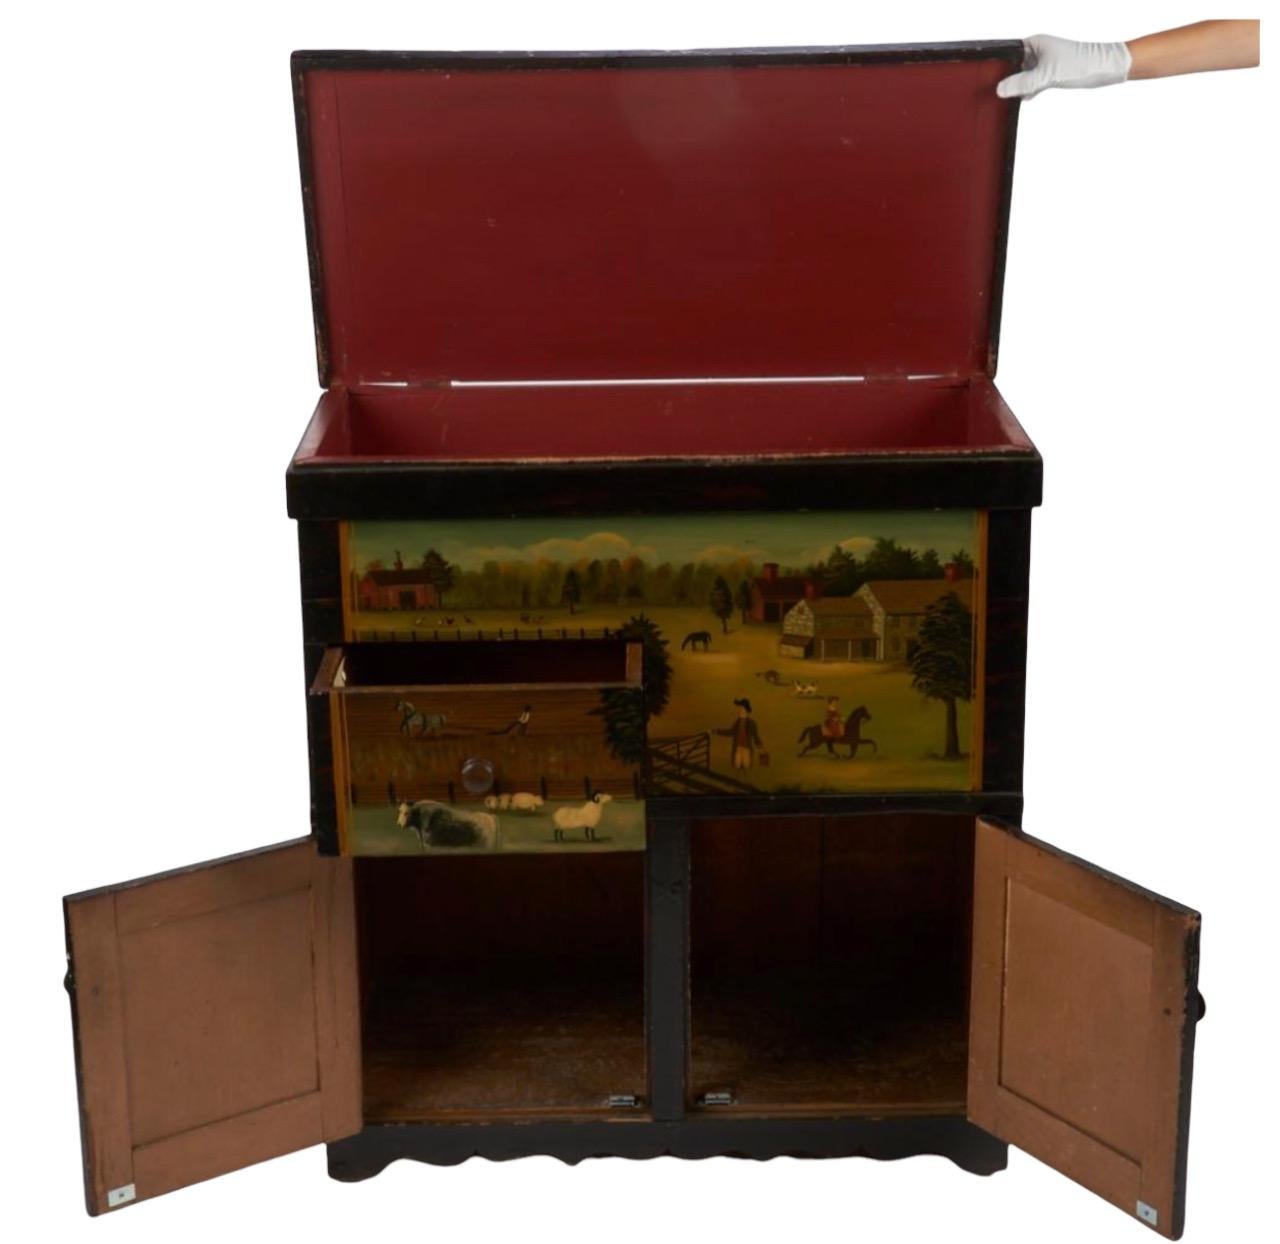 Ralph Cohoon Kabinett des frühen 20. Jahrhunderts. Kommodenschrank mit bemalten Paneelen und Schubladen, die eine Bauernhofszene darstellen. Auf der Innenseite der Schublade befindet sich ein Etikett mit der Aufschrift 